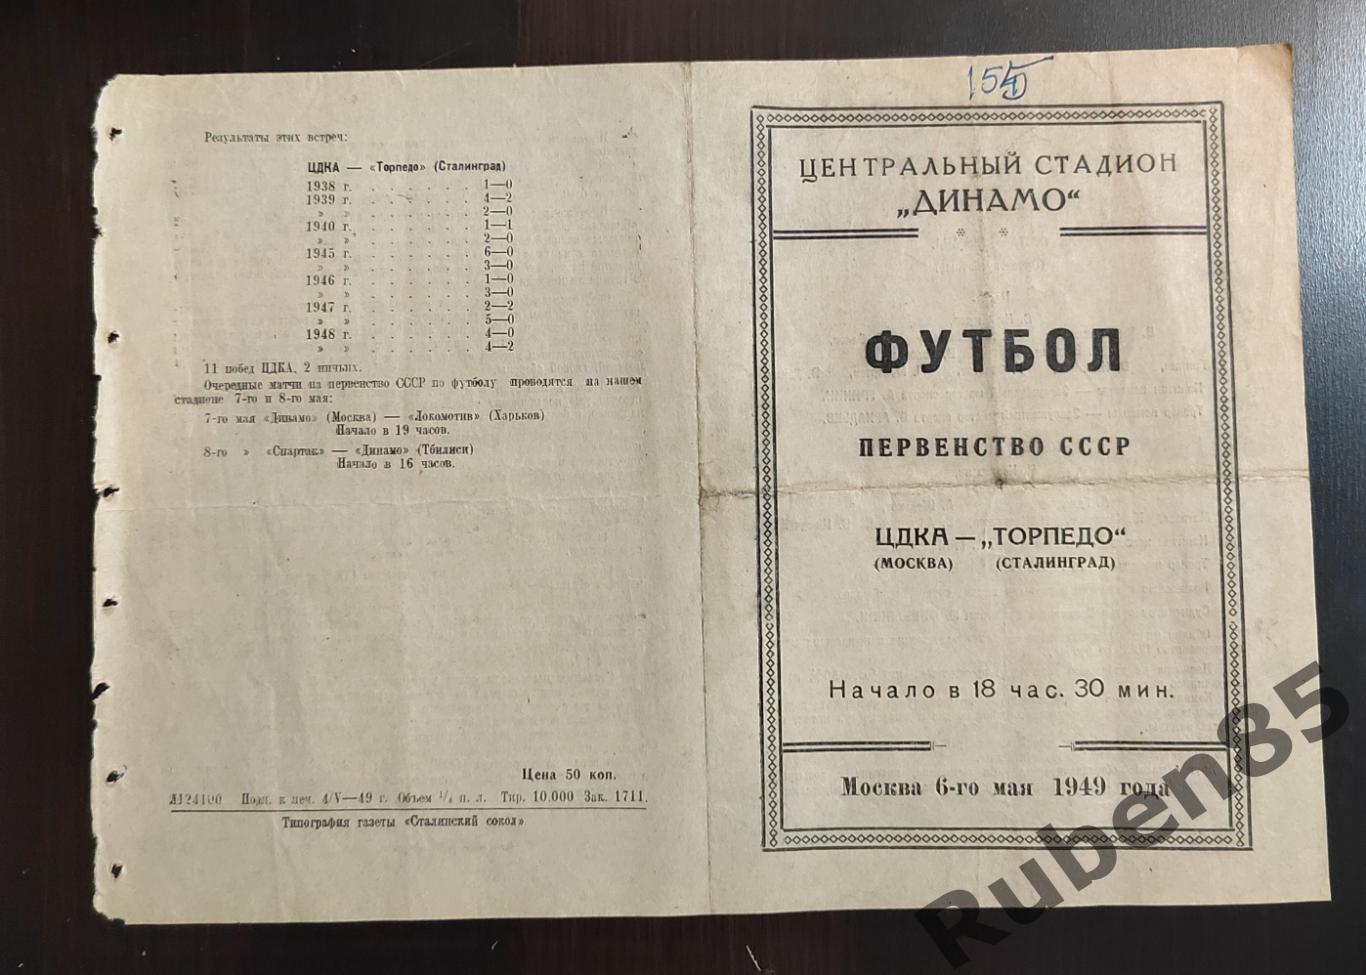 Программа ЦДКА - Торпедо Сталинград 1949 ЦСКА